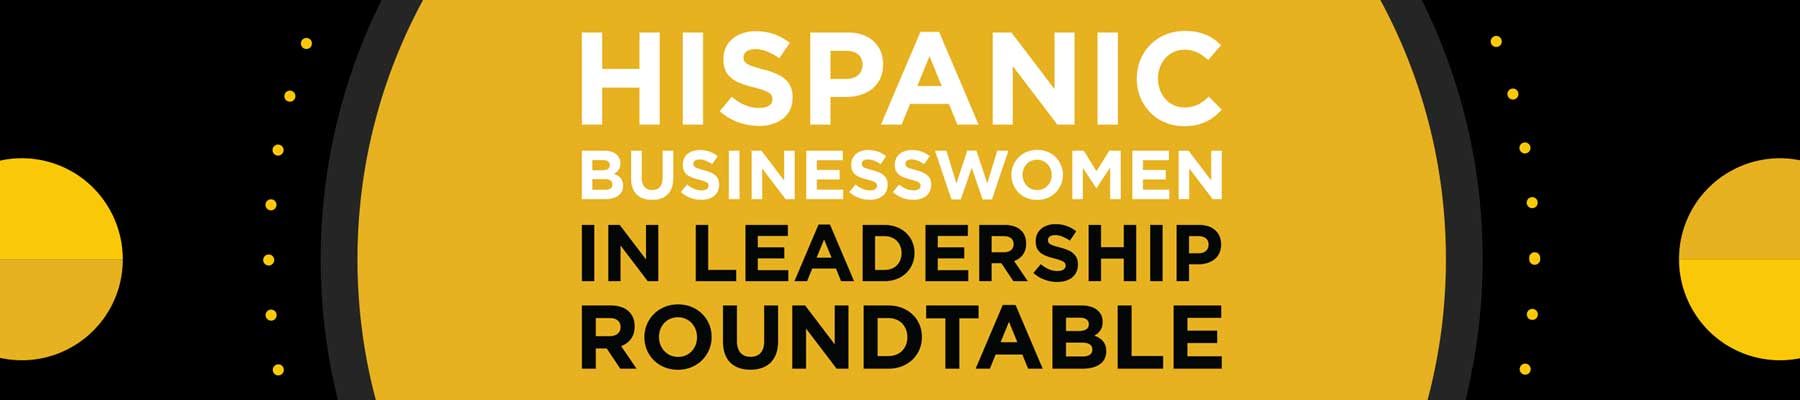 Hispanic Businesswomen in Leadership Roundtable